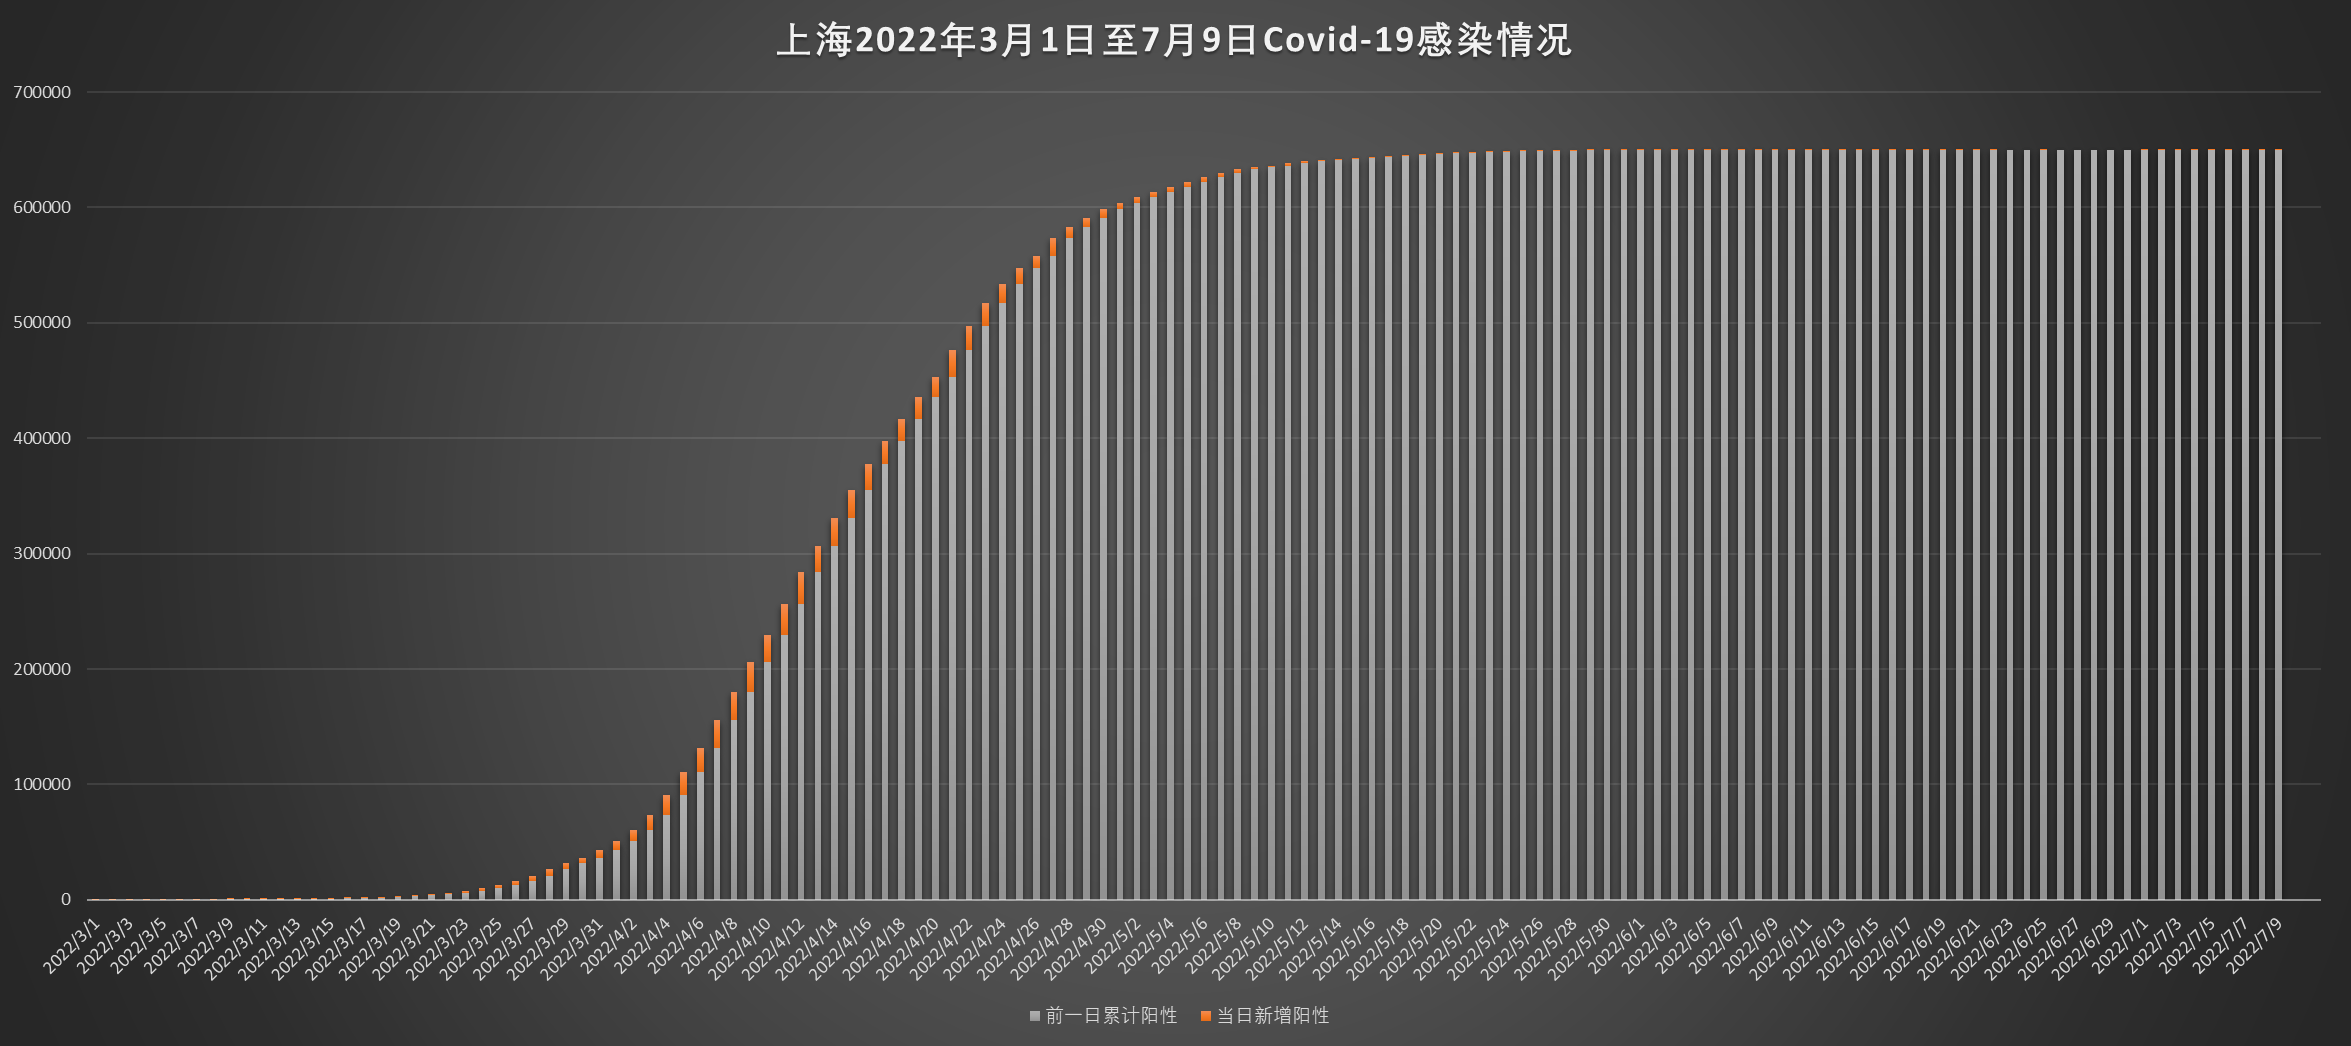 上海2022年3月1日至7月9日Covid-19感染情况